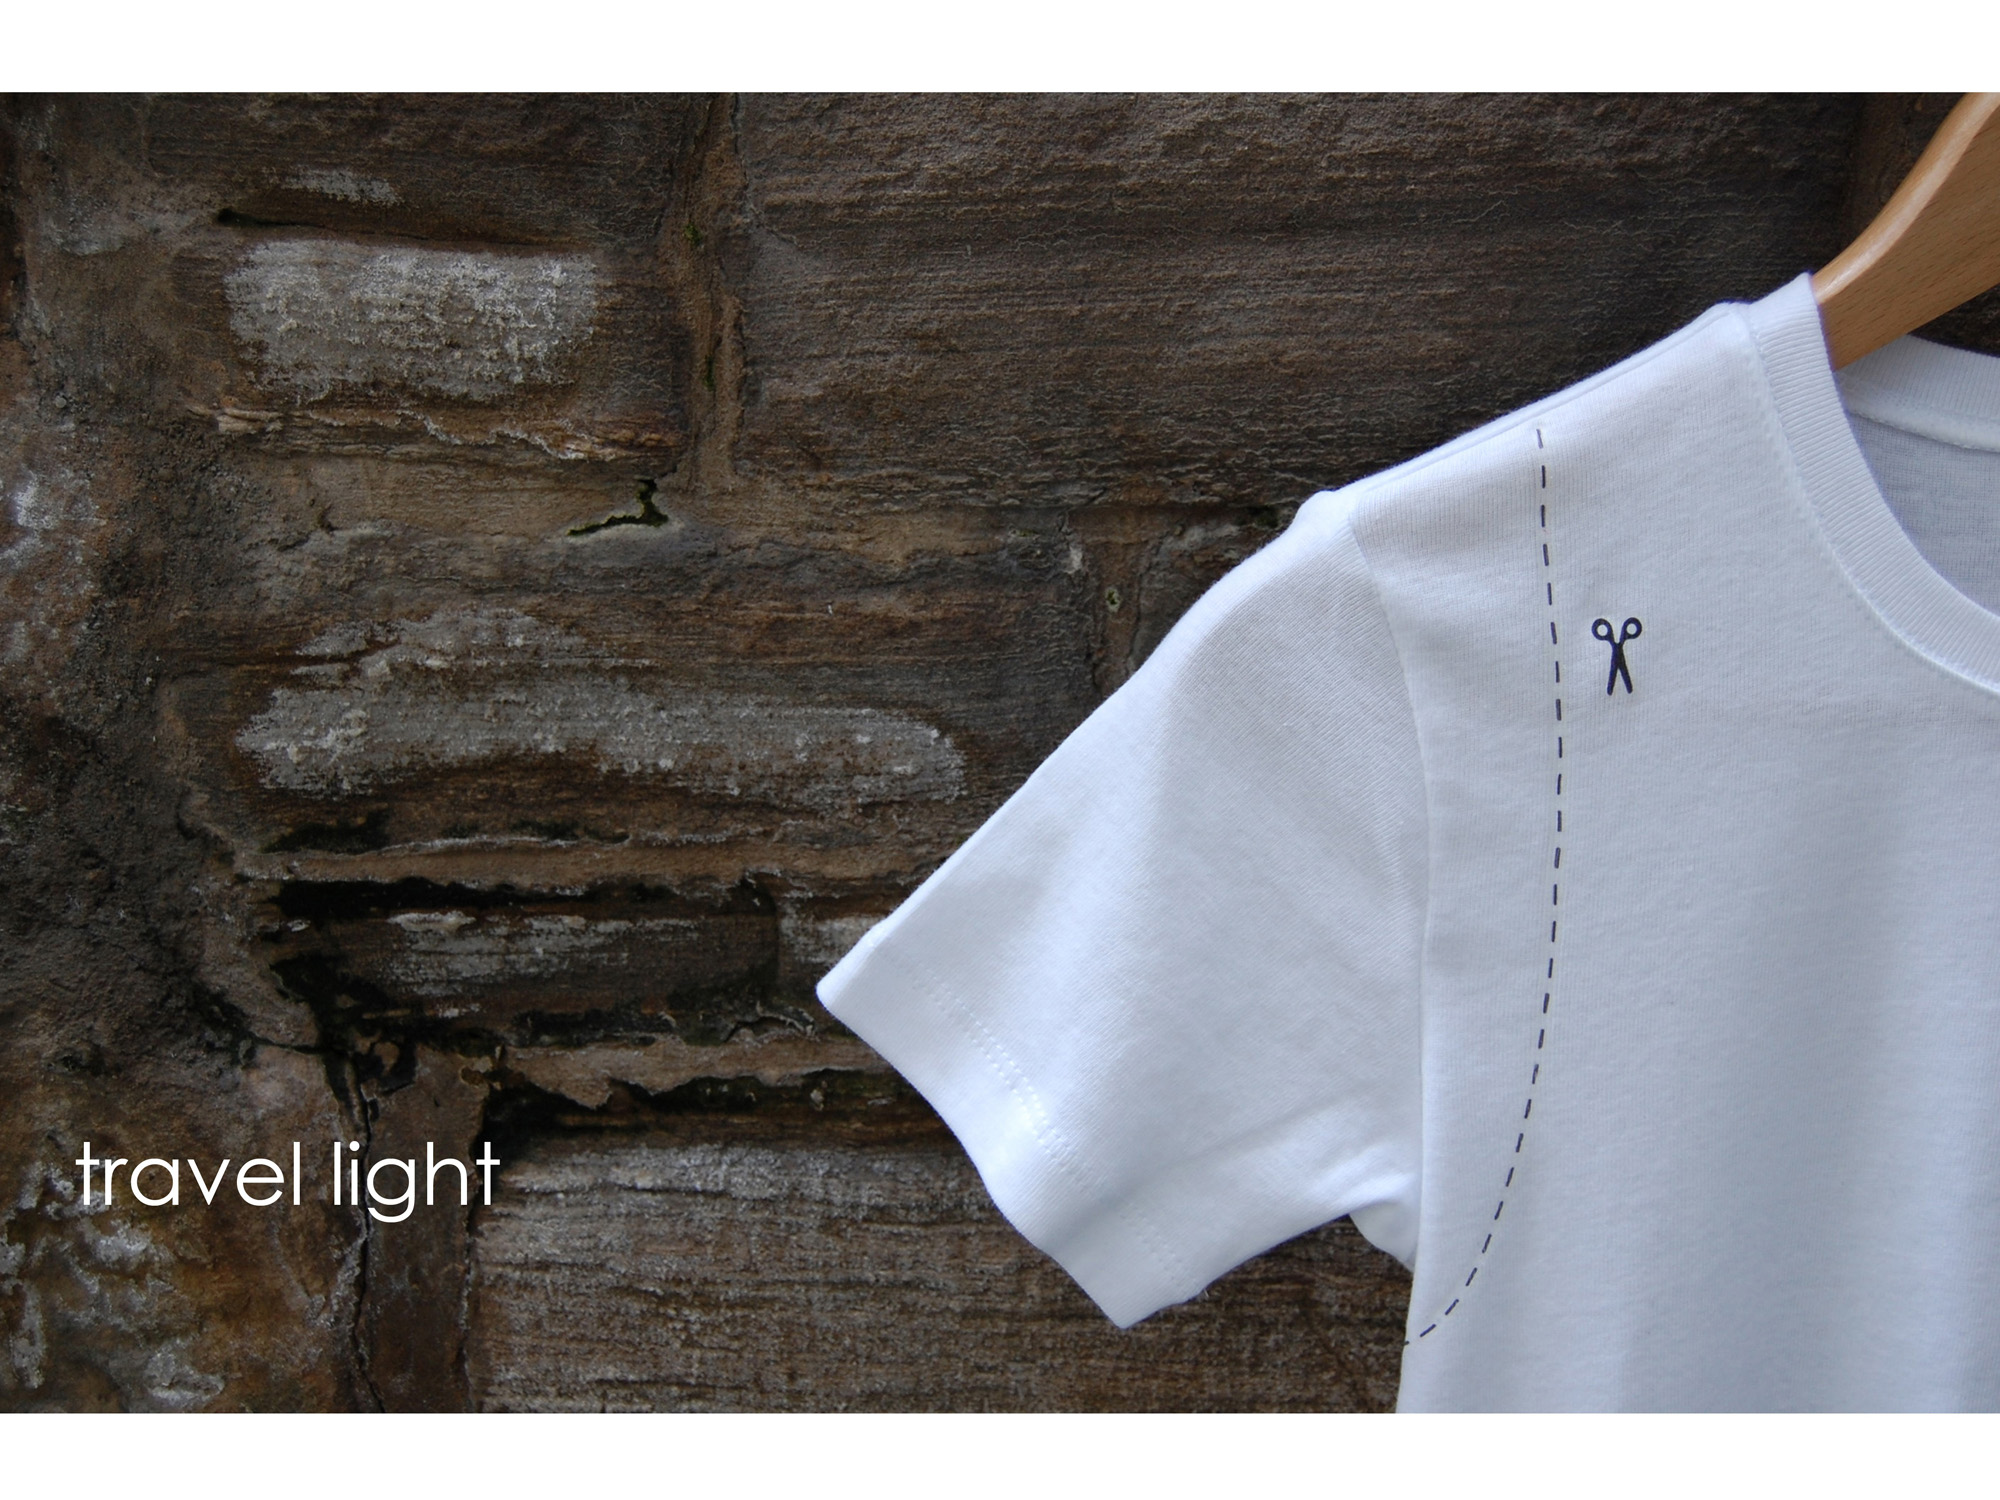 Travel Light - T-shirt concept